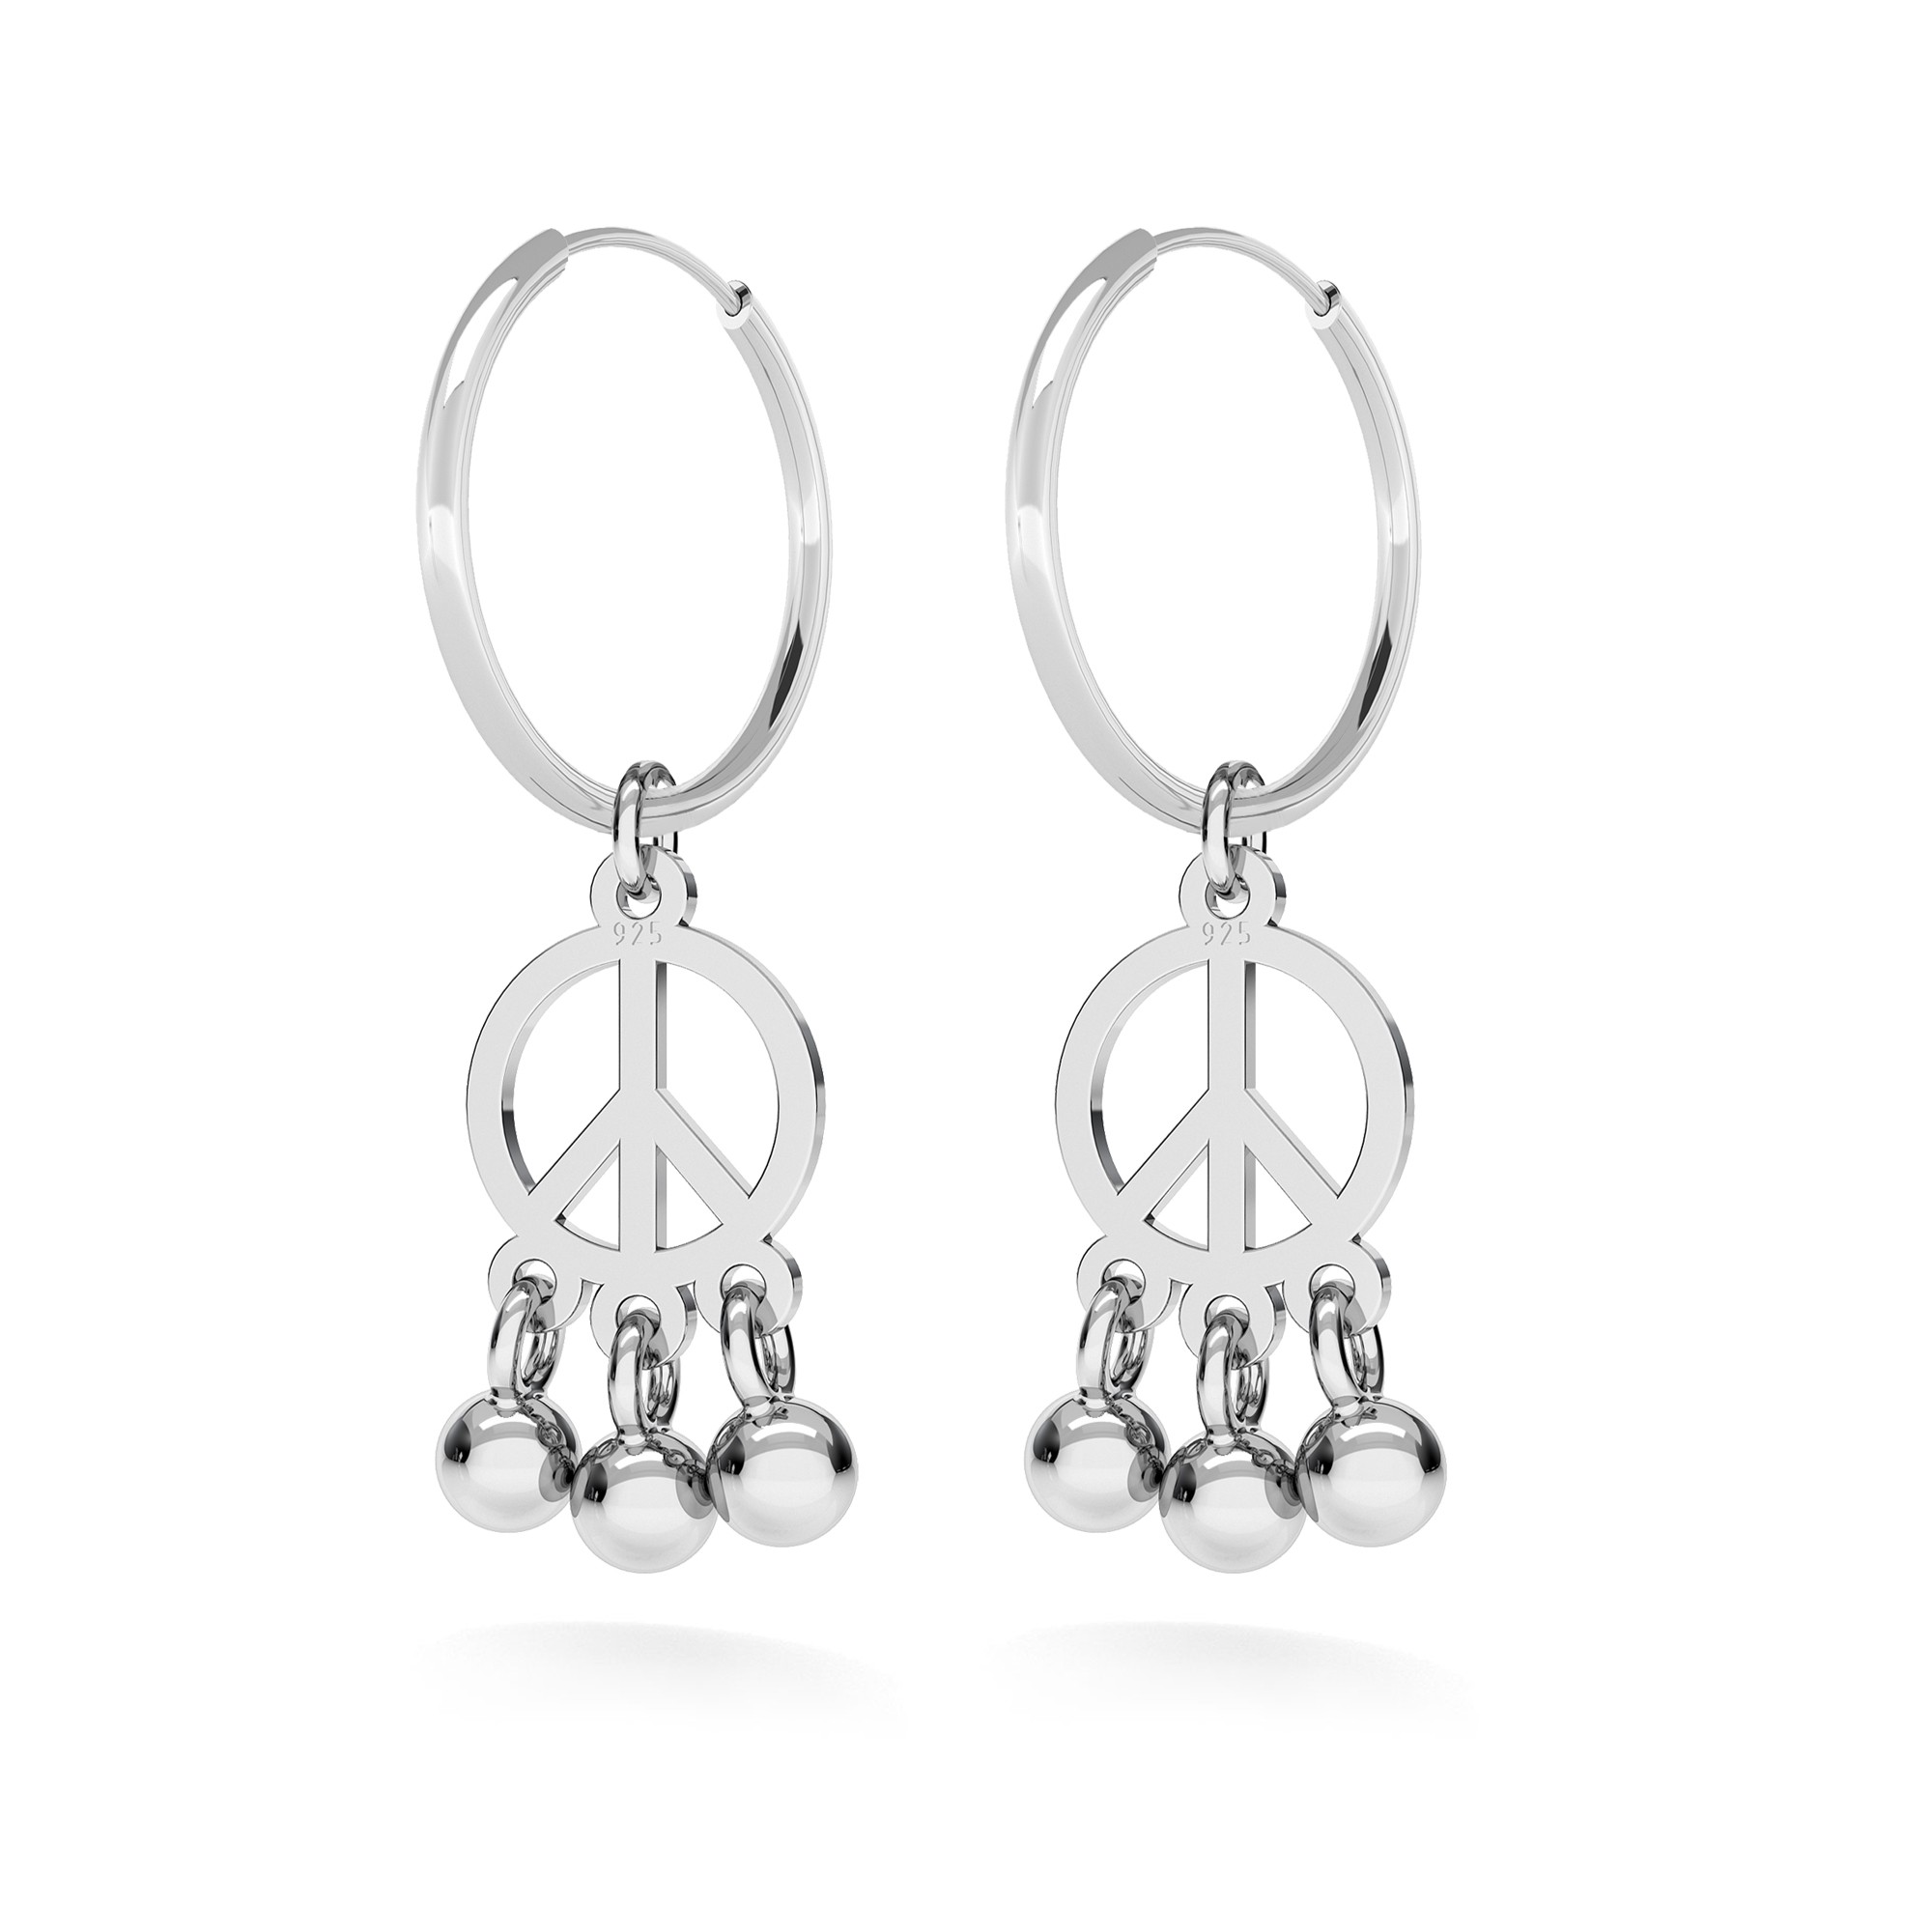 Hoop earrings PEACE SYMBOL sterling silver 925